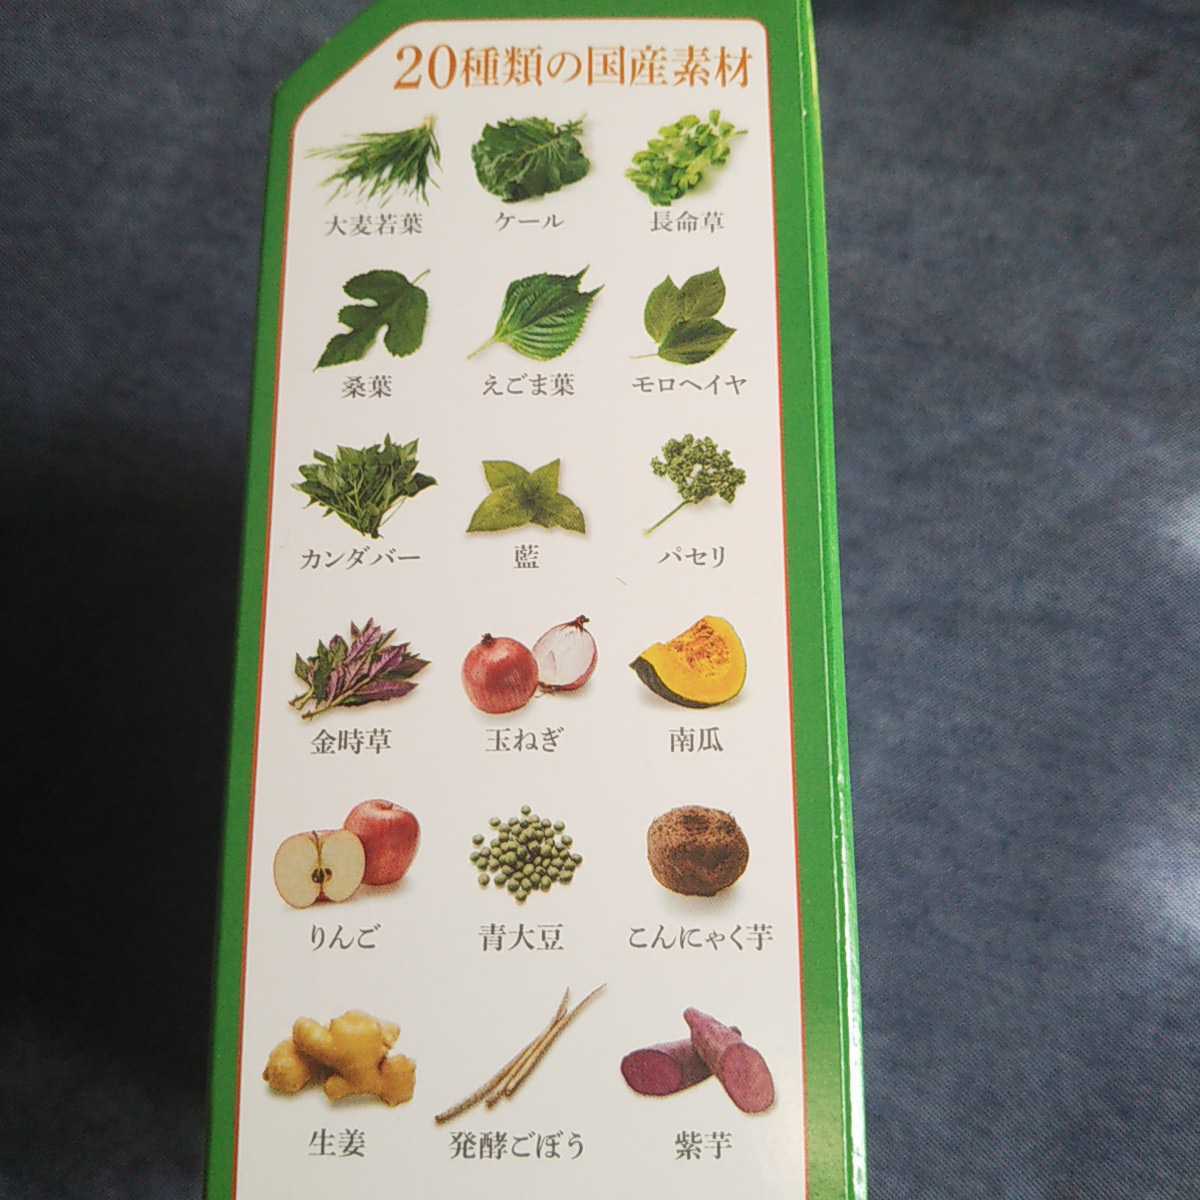 新日本製薬 青汁サラダプラス 31包入 PLUS 青汁 栄養機能食品 抹茶風味で飲みやすい_画像6